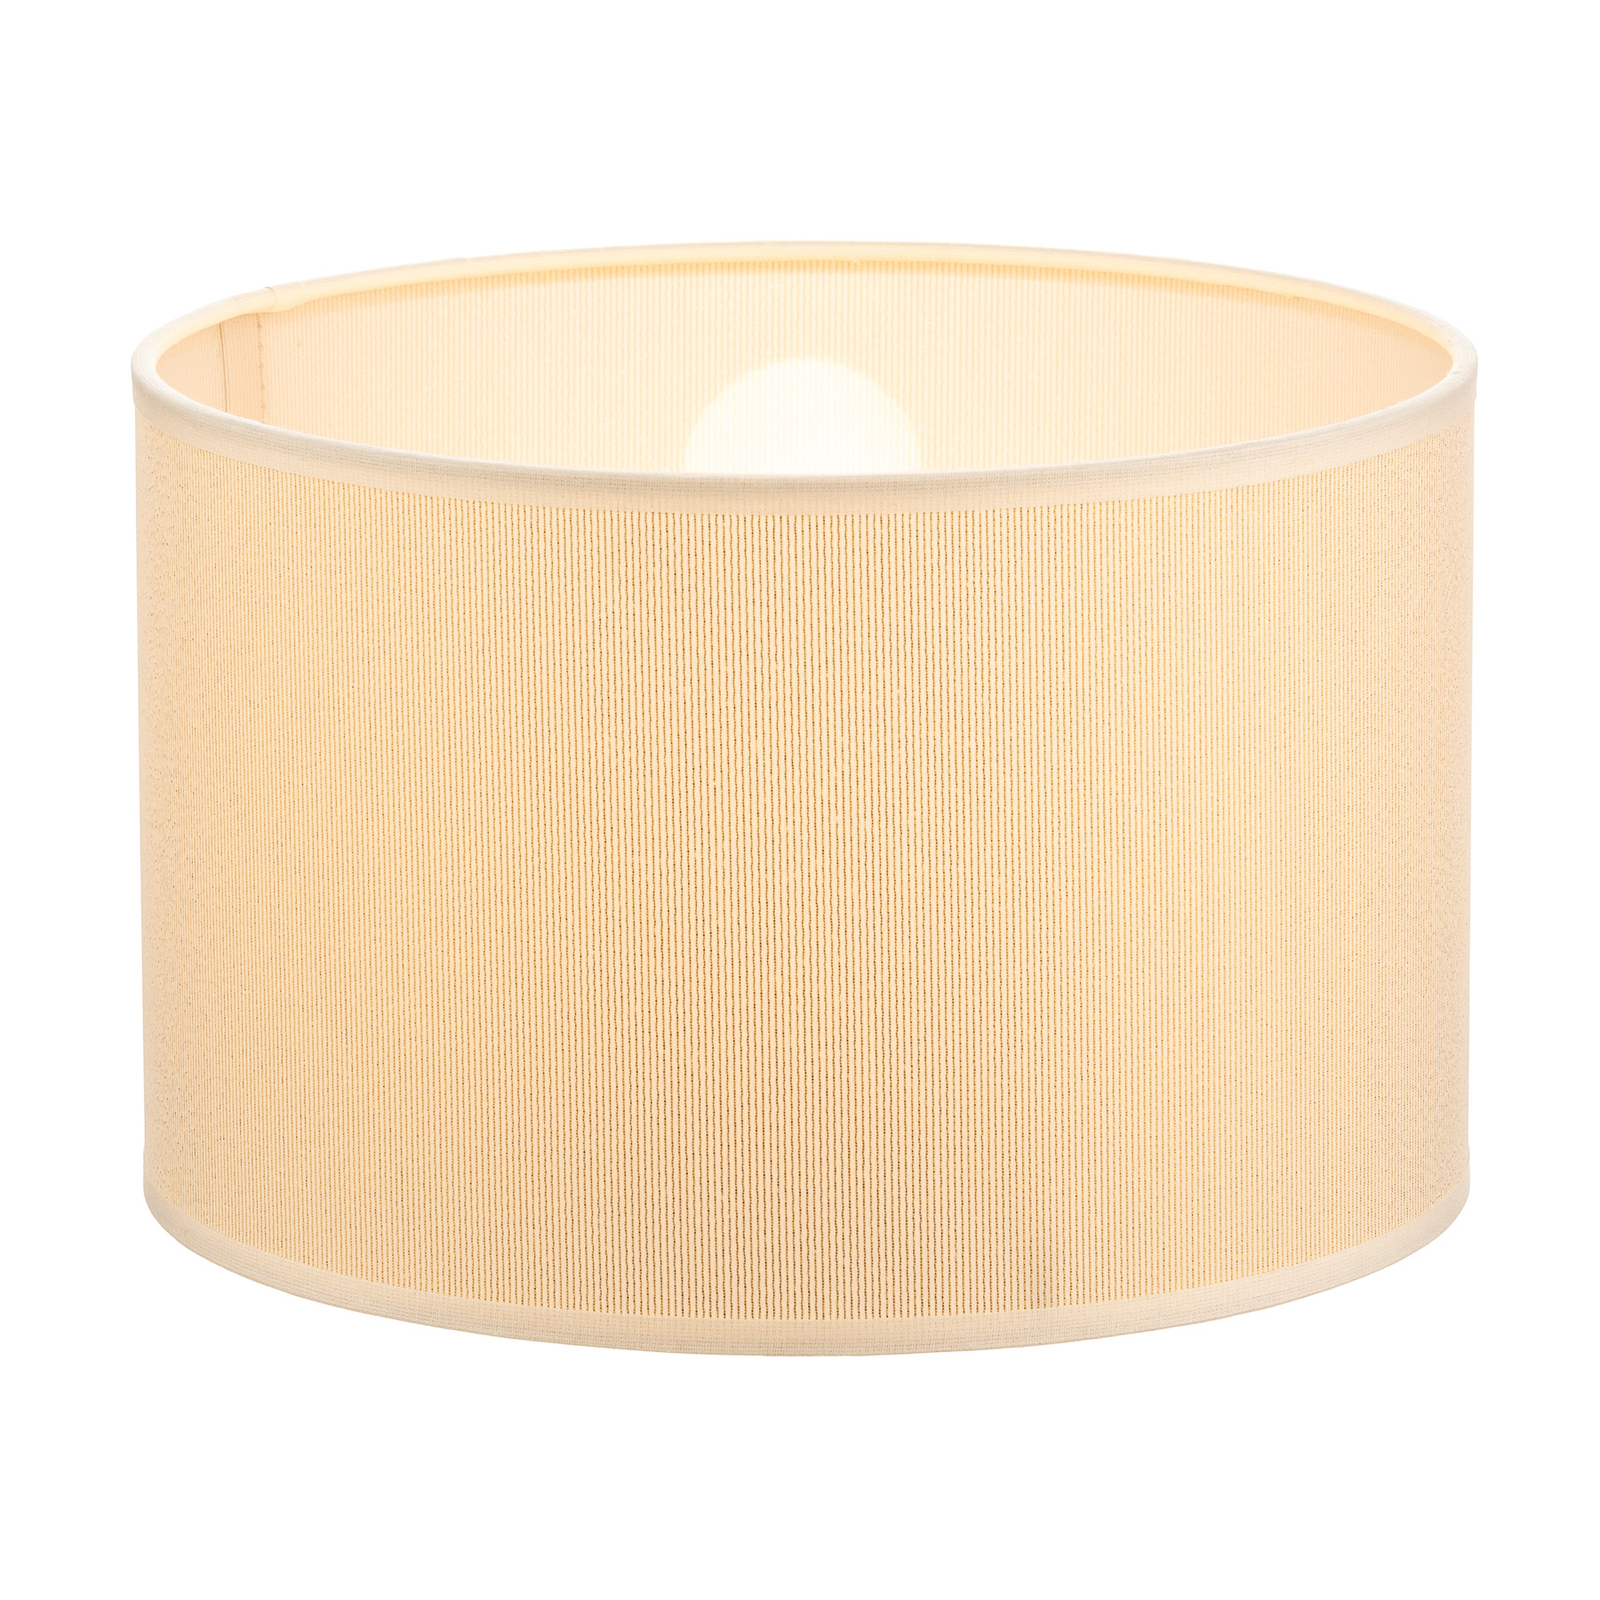 Roller lampshade Ø 25 cm, ecru/gold